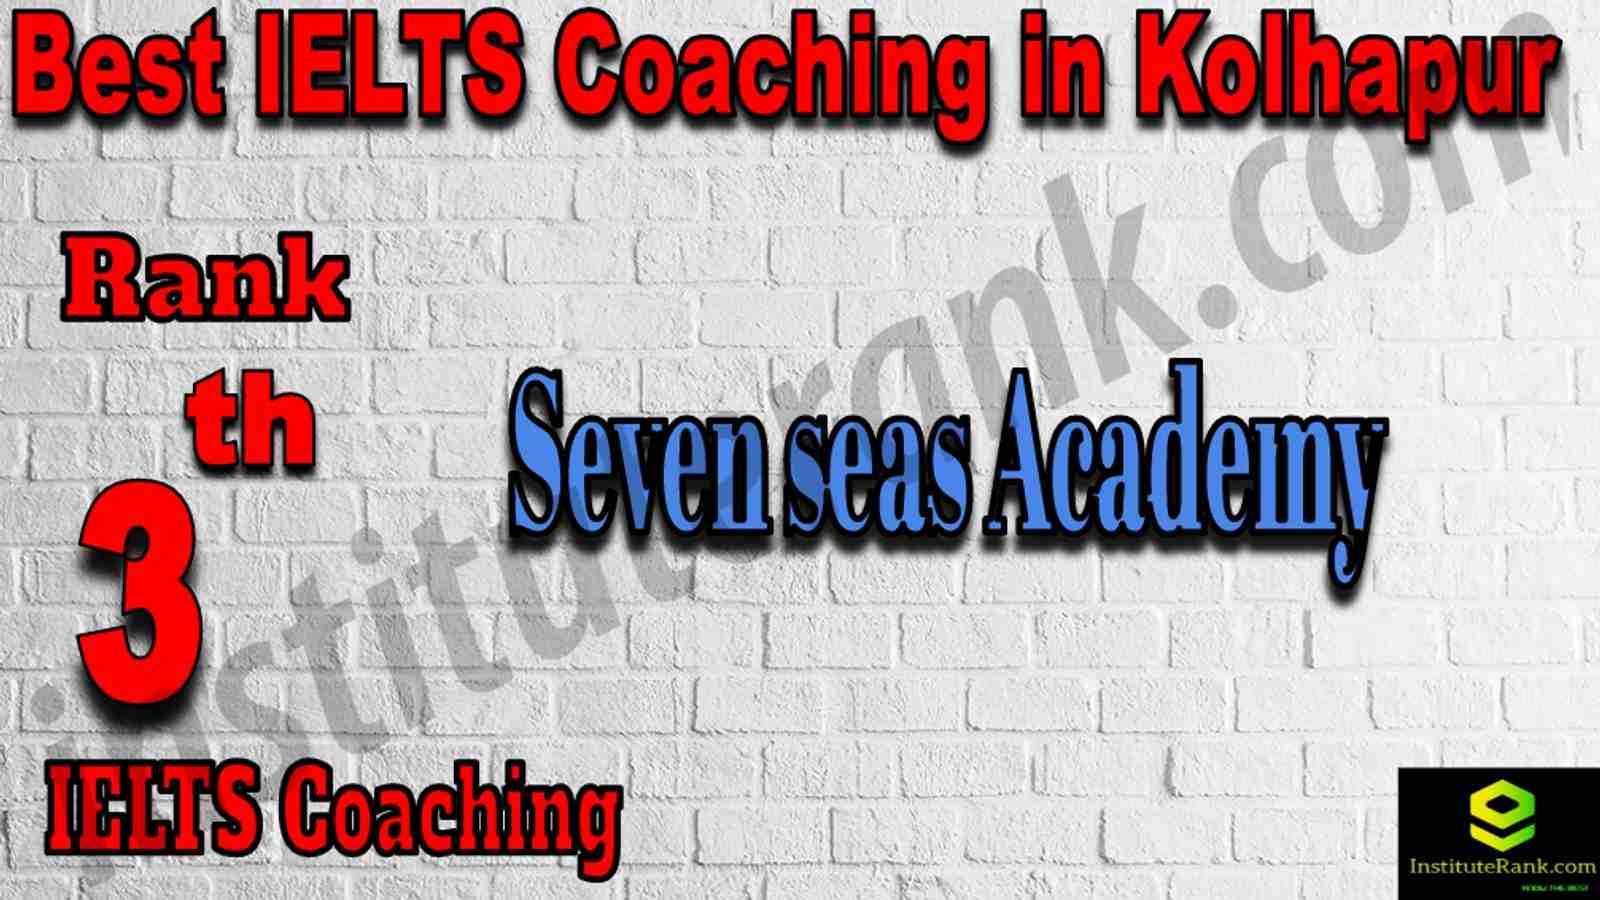 3rd Best IELTS Coaching in Kolhapur